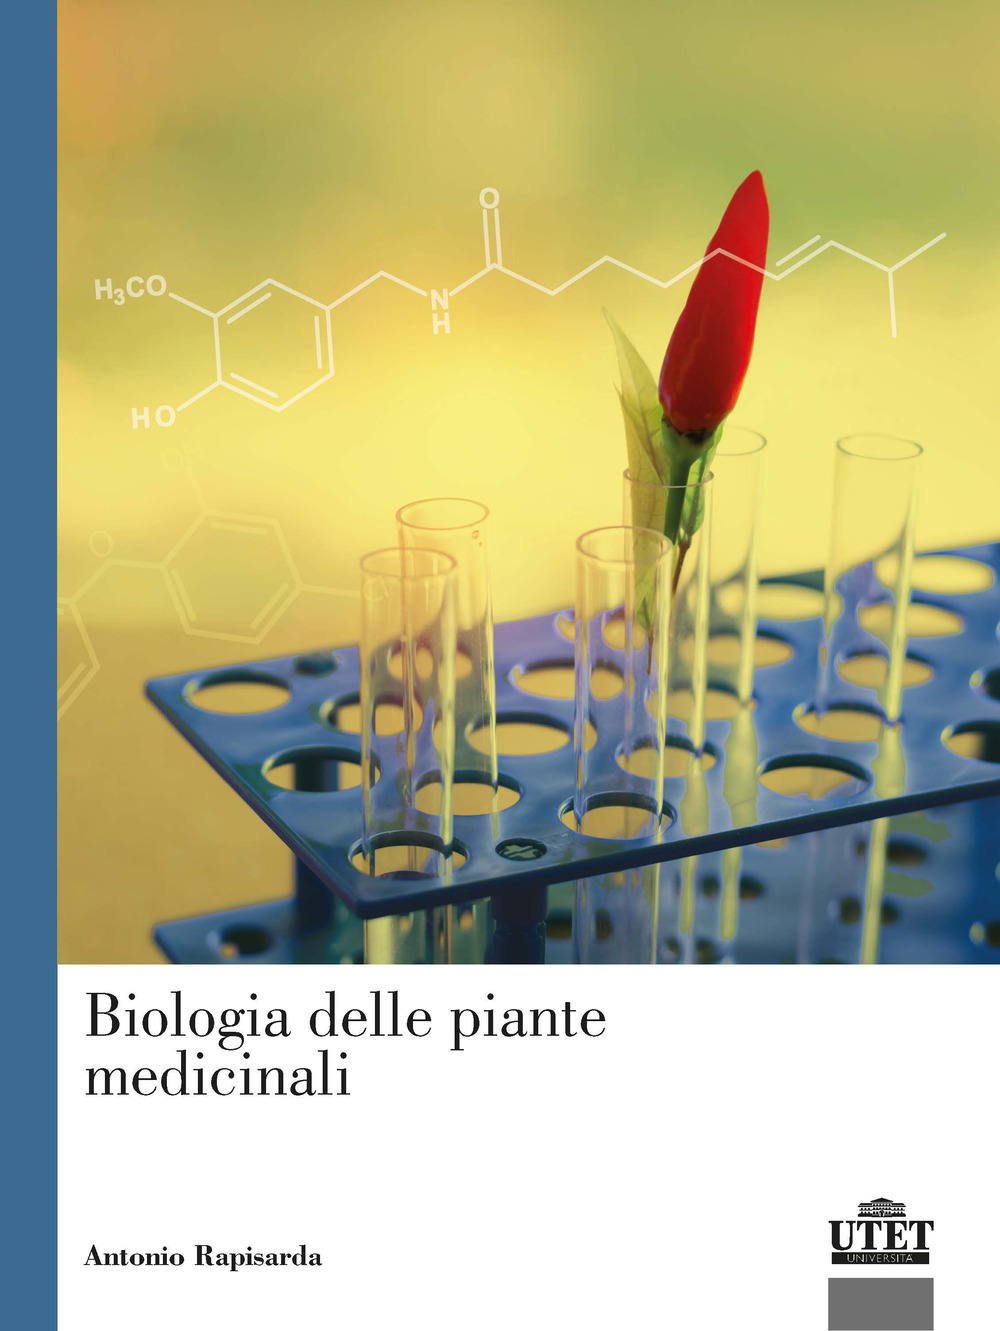 Libri Antonio Rapisarda - Biologia Delle Piante Medicinali NUOVO SIGILLATO, EDIZIONE DEL 21/09/2021 SUBITO DISPONIBILE